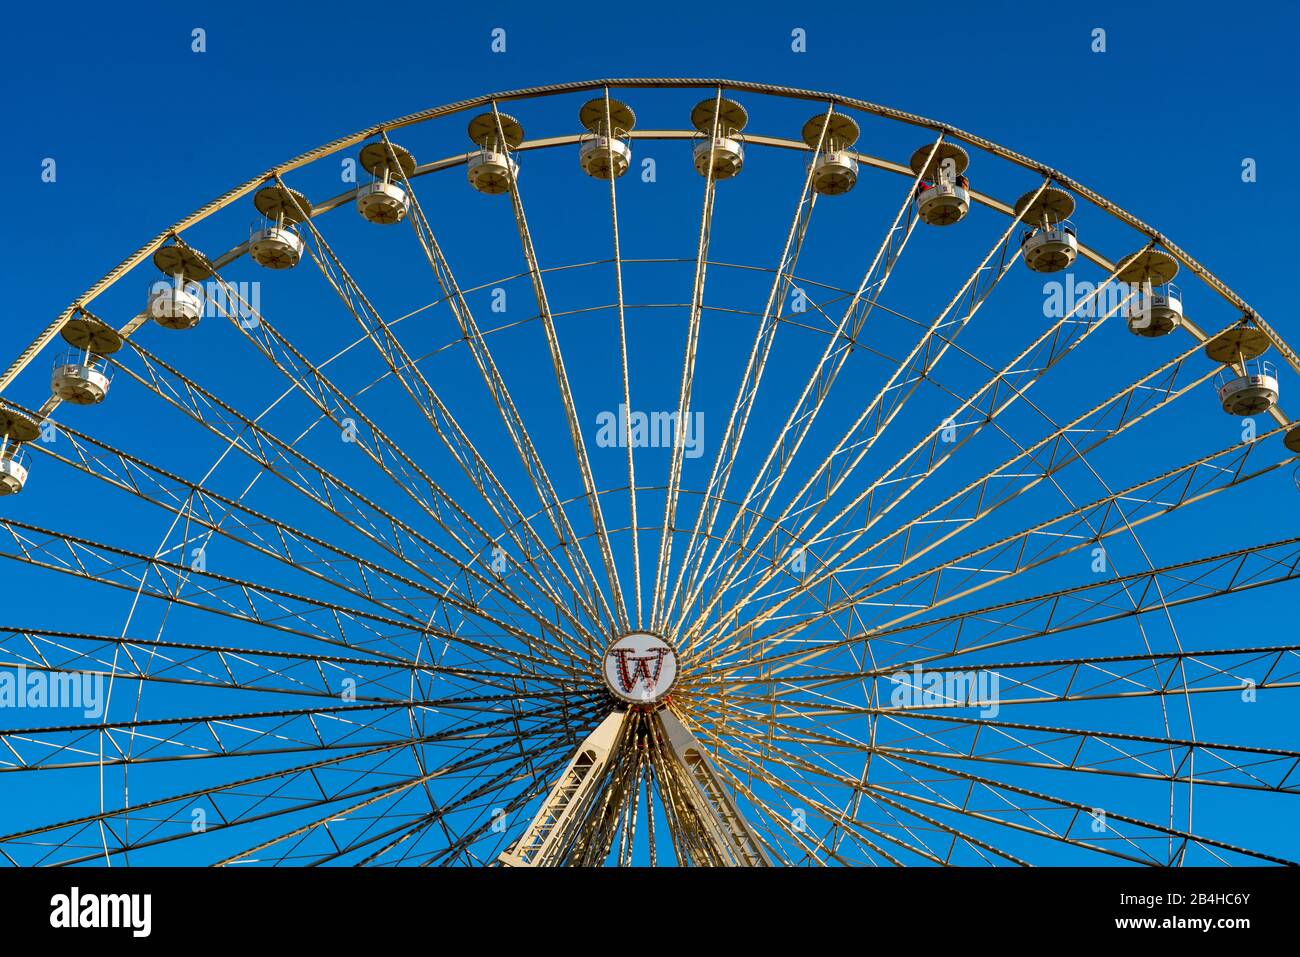 Riesenrad, mit offenen Gondeln, Blauer Himmel, auf dem Burgplatz in Essen, Stockfoto